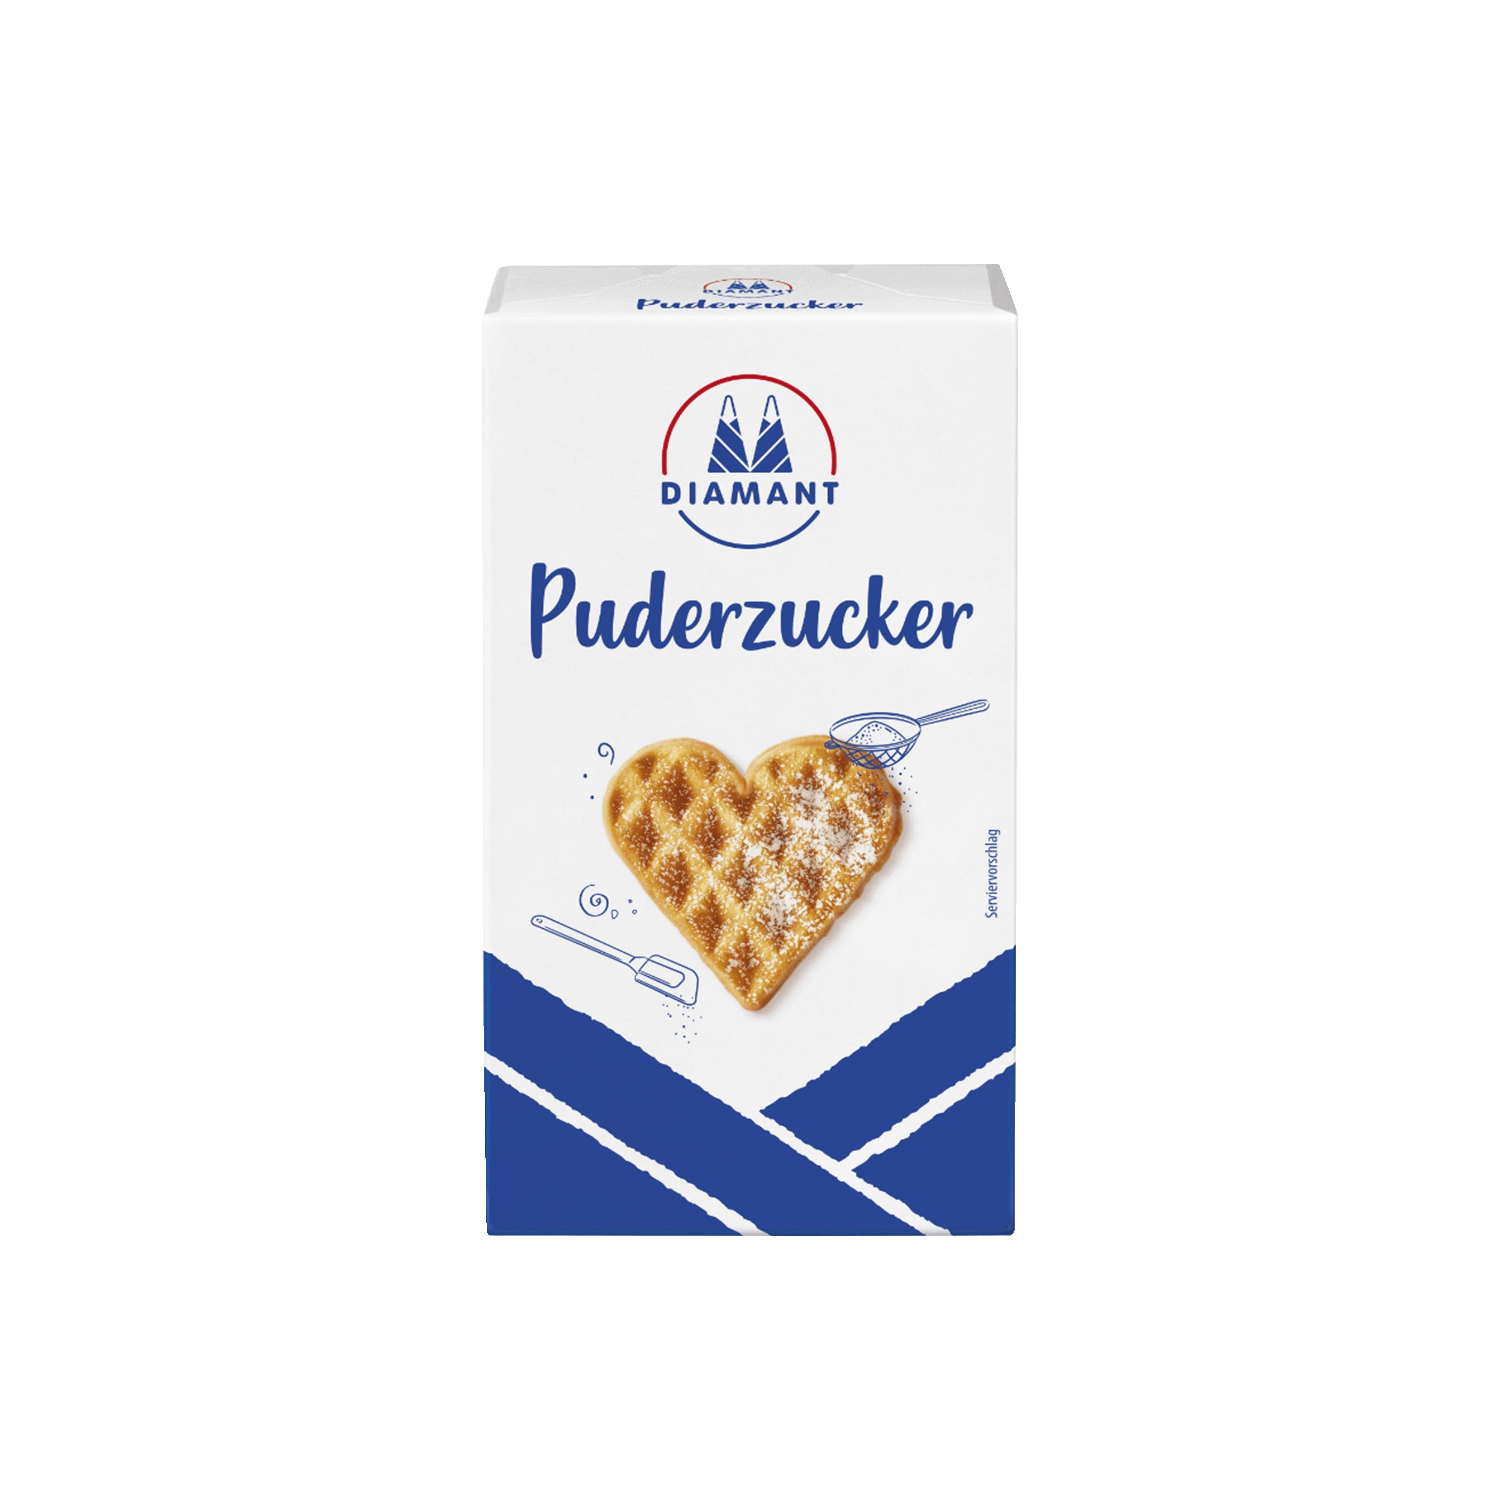 Puderzucker, 250g